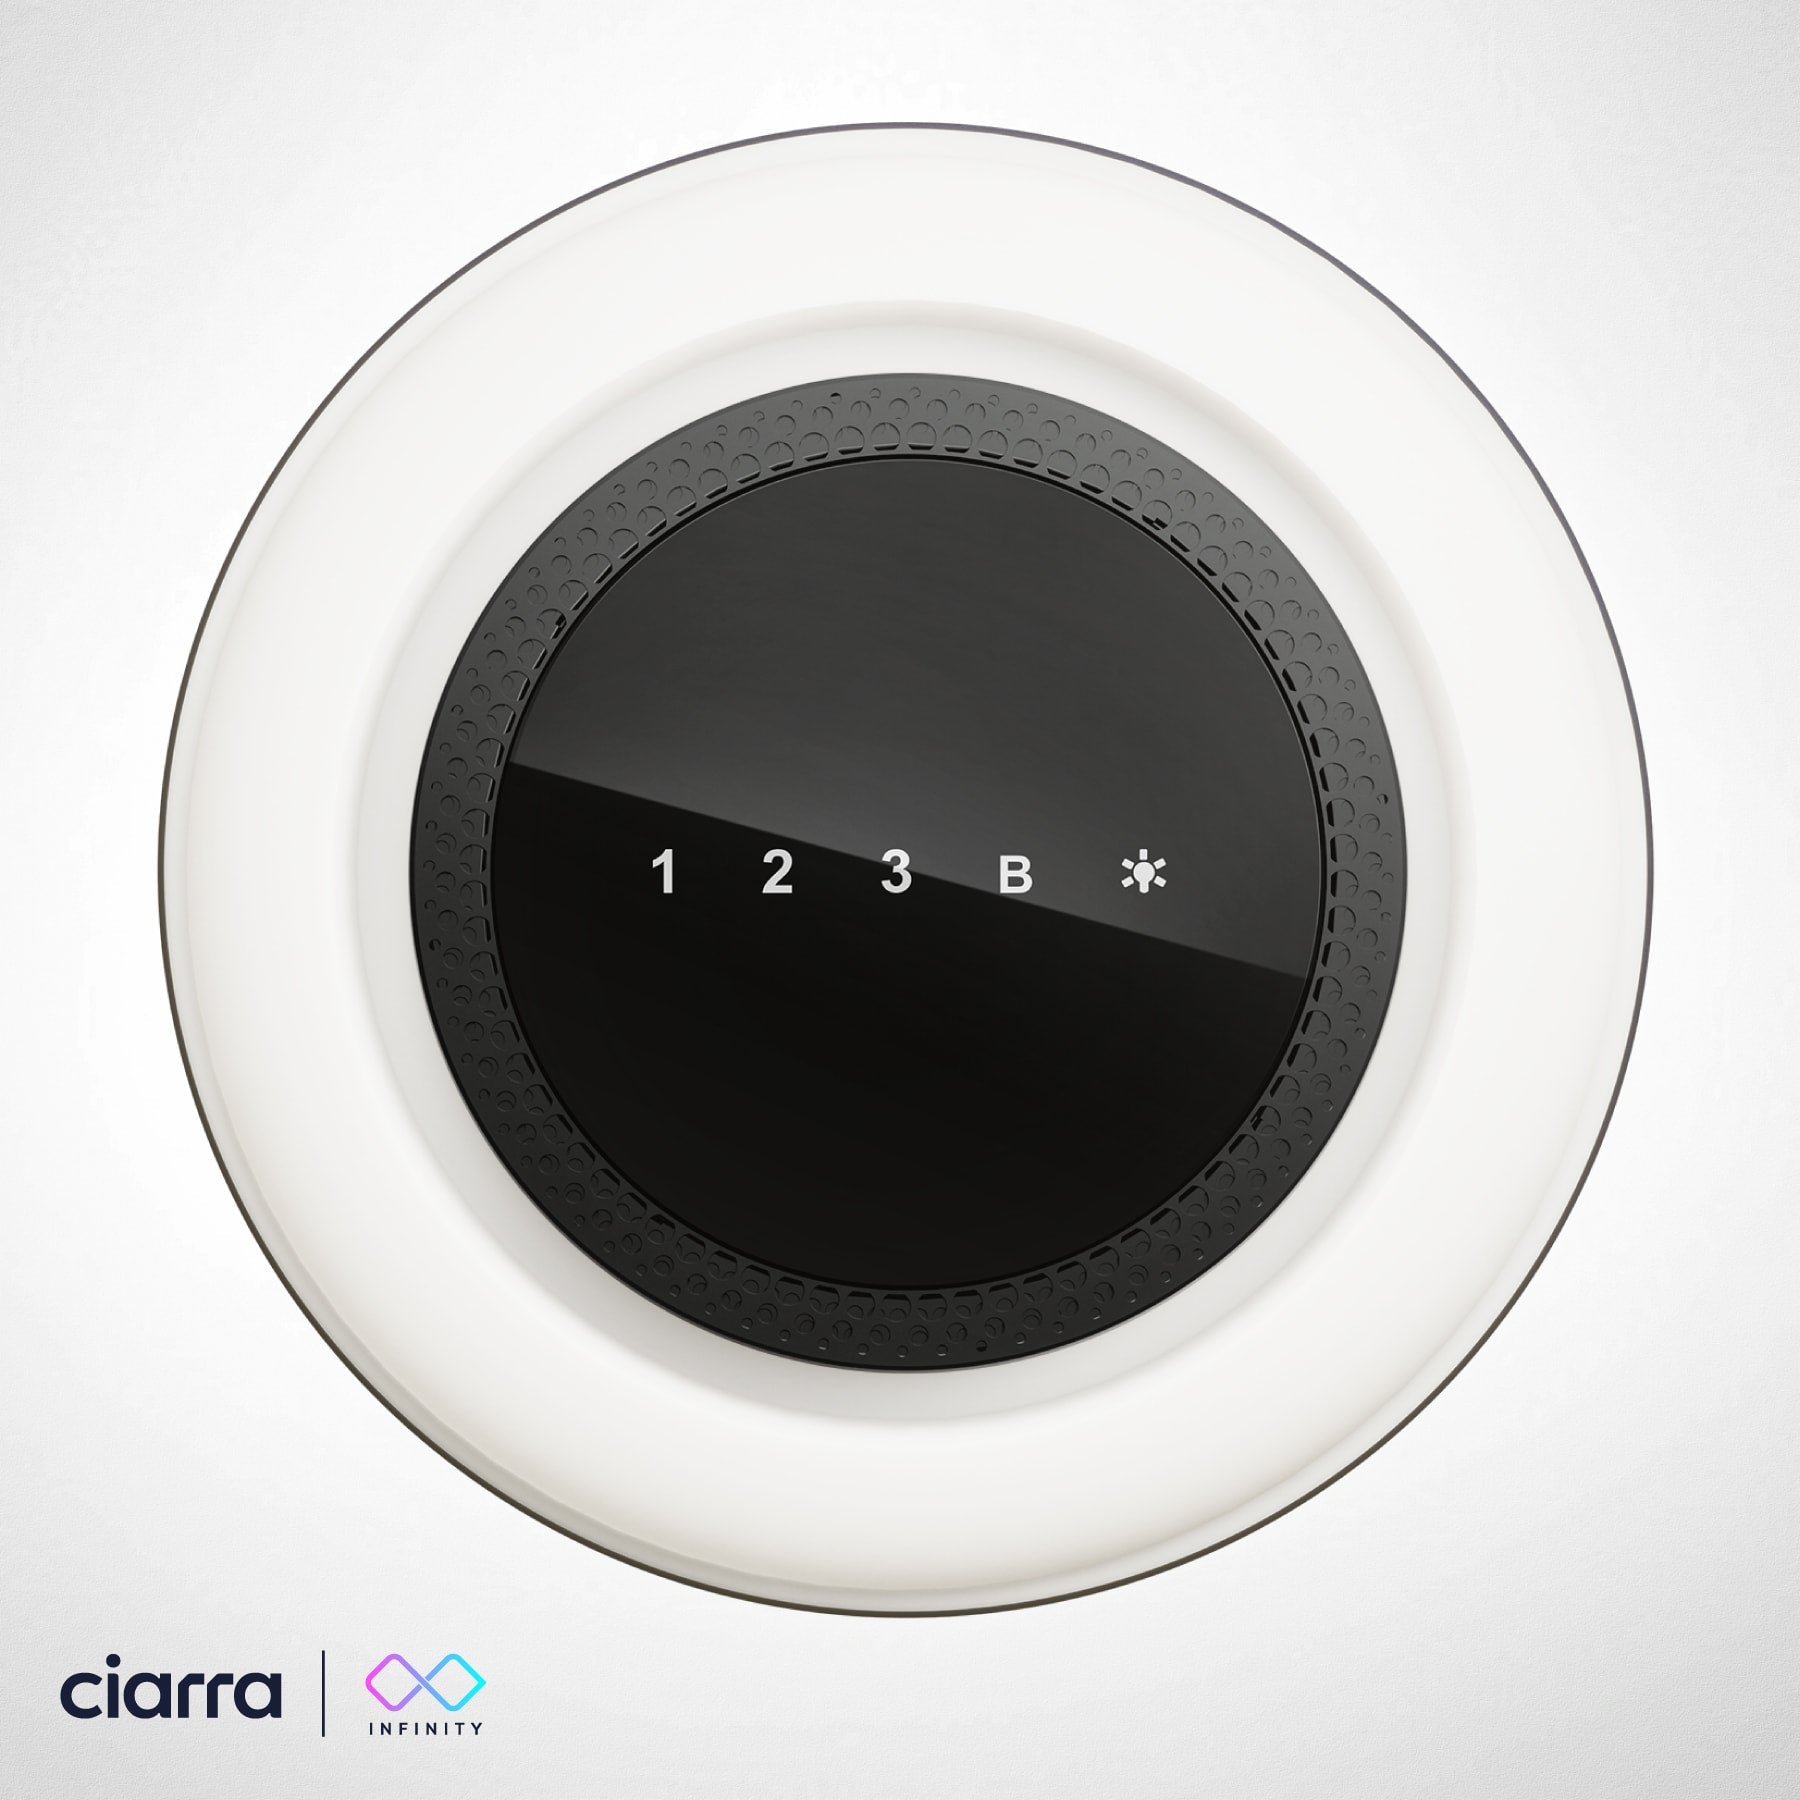 Ciarra INFINITY Intelligente Plasma Îlot Hotte CBCB4833-OW